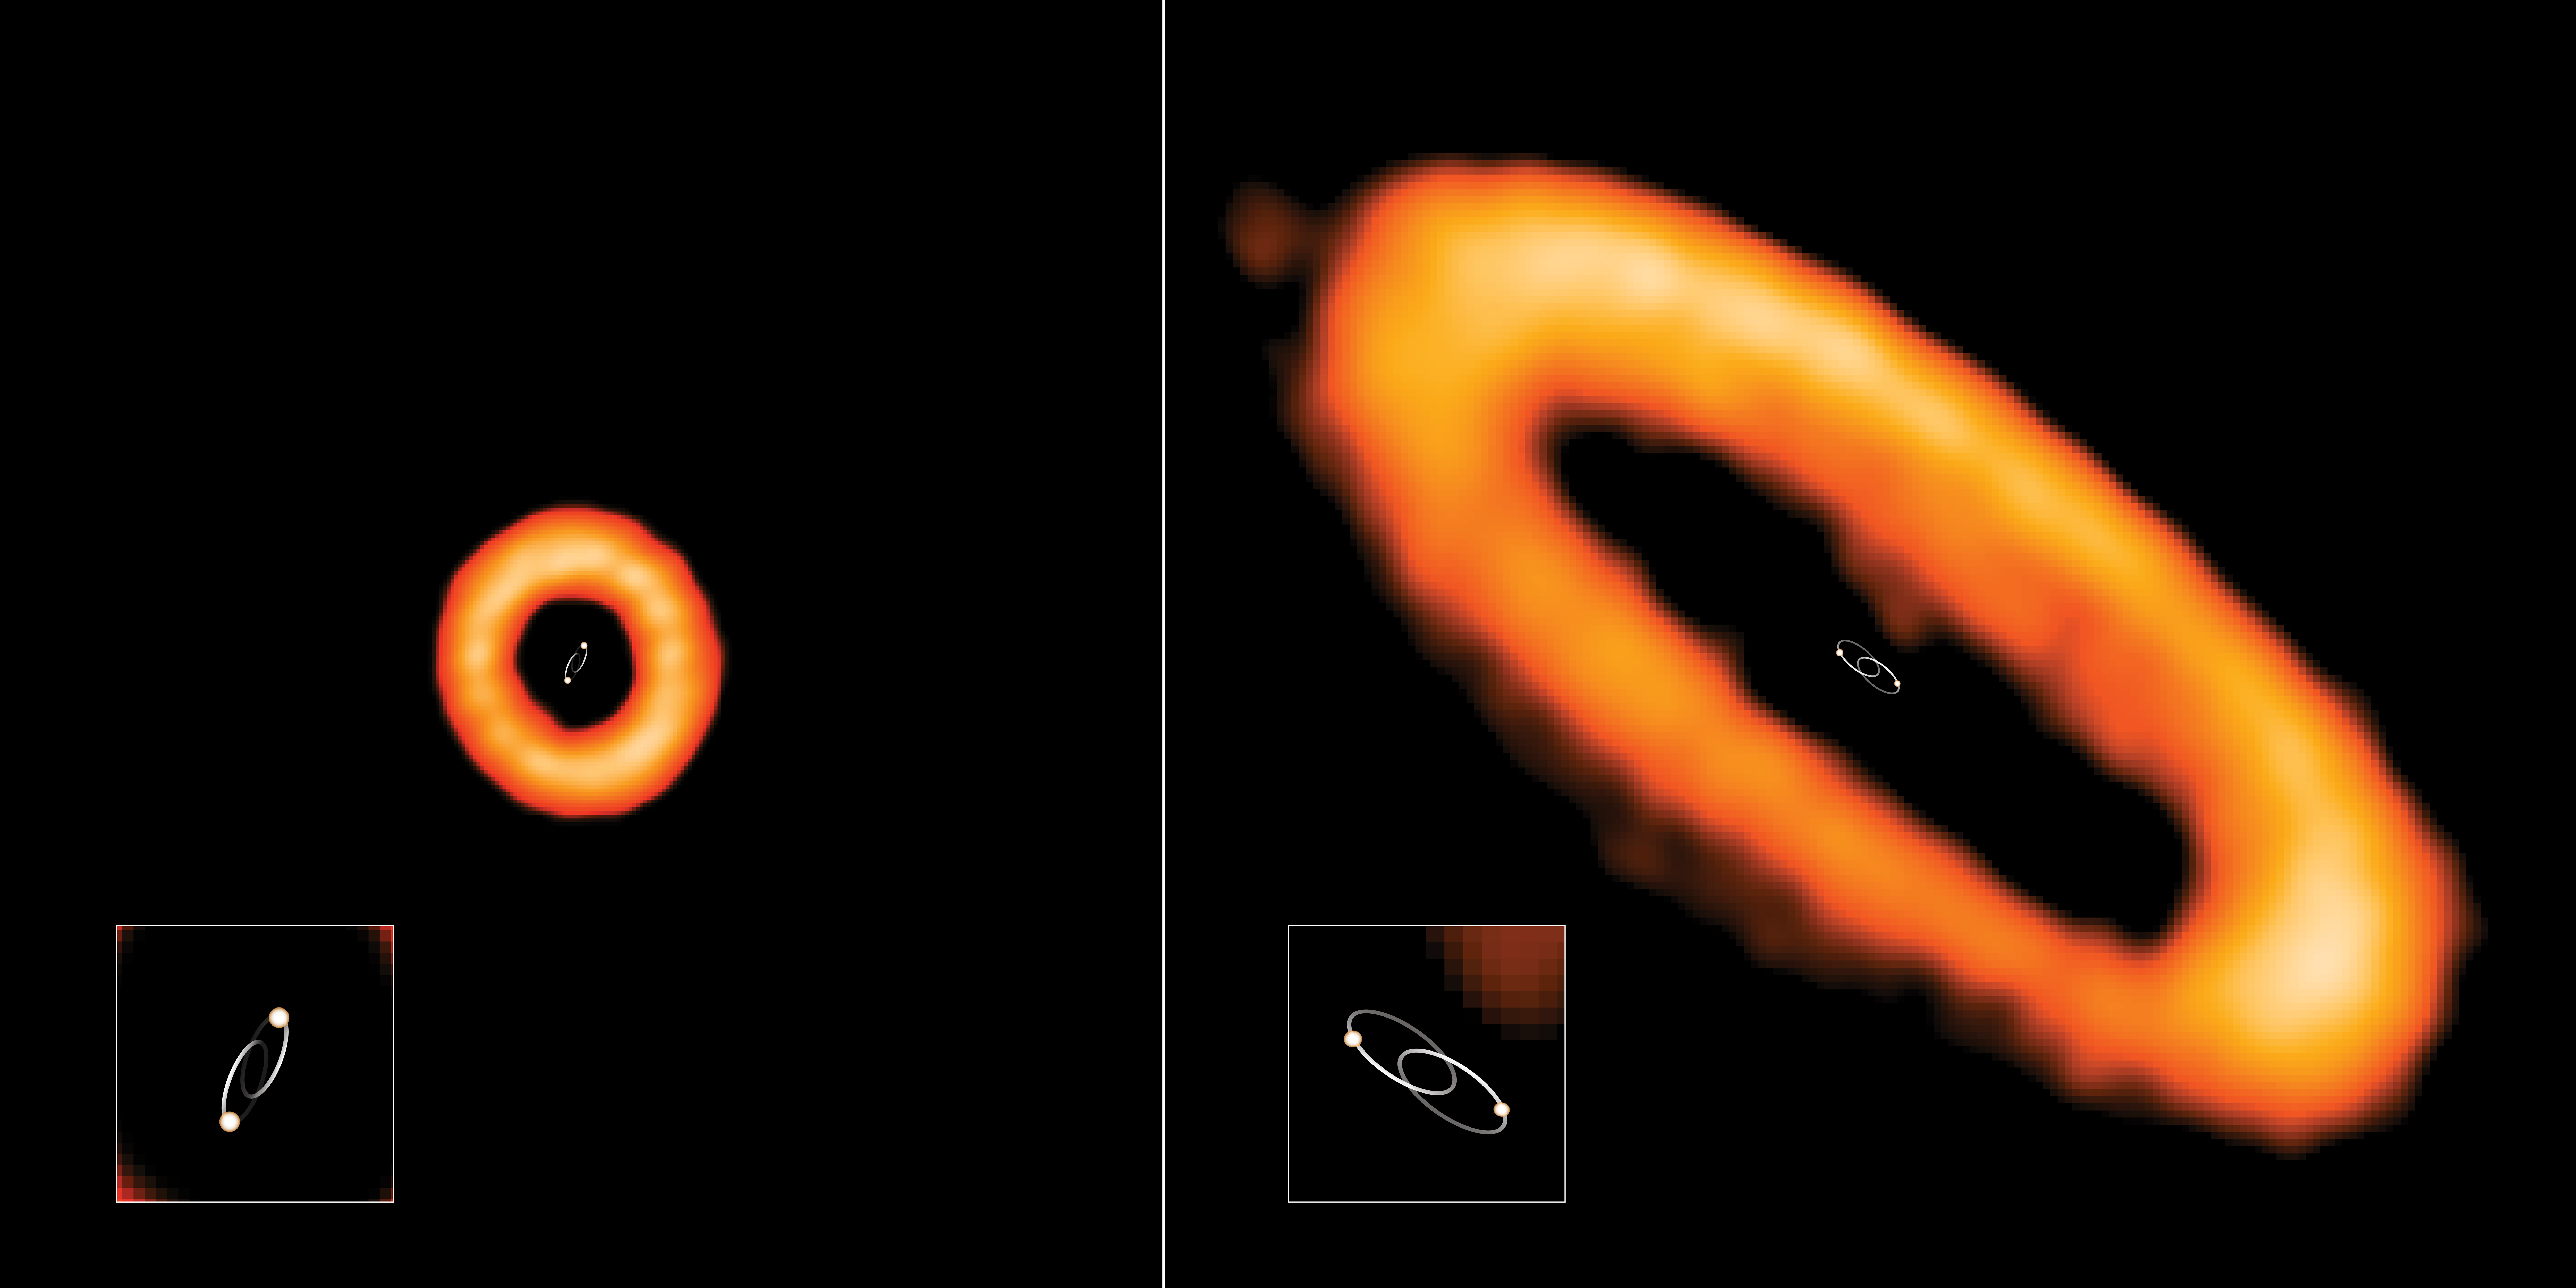 Większość dysków protoplanetarnych (kolor pomarańczowy) otaczających gwiazdowe układy podwójne znajduje się w płaszczyźnie orbity układu podwójnego (np. po prawej stronie układ AK Sco o okresie orbitalnym 315 dni). Ale odkryto również dyski skierowane prostopadle do płaszczyzny orbity układu gwiazdowego (np. po lewej HD 98800 B o okresie orbitalnym 13,6 dnia). Tutaj orbity gwiazd układu podwójnego są narysowane białymi liniami, a gwiazdy poruszają się w kierunku od i do obserwatora. Źródło: ALMA (ESO/NAOJ/NRAO), I. Czekala i G. Kennedy; NRAO/AUI/NSF, S. Dagnello